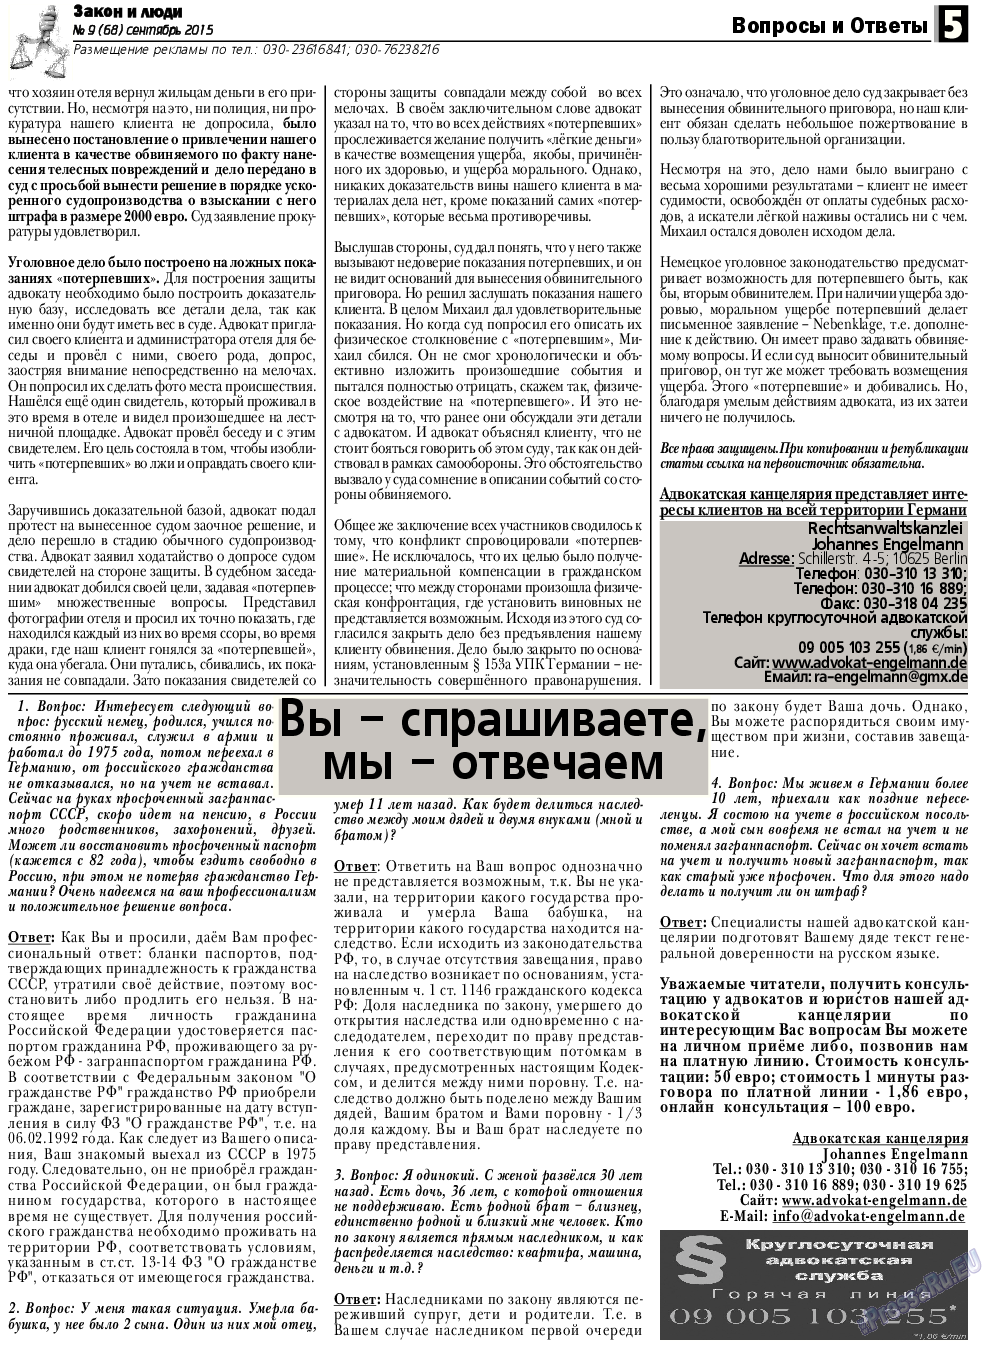 Закон и люди, газета. 2015 №9 стр.5